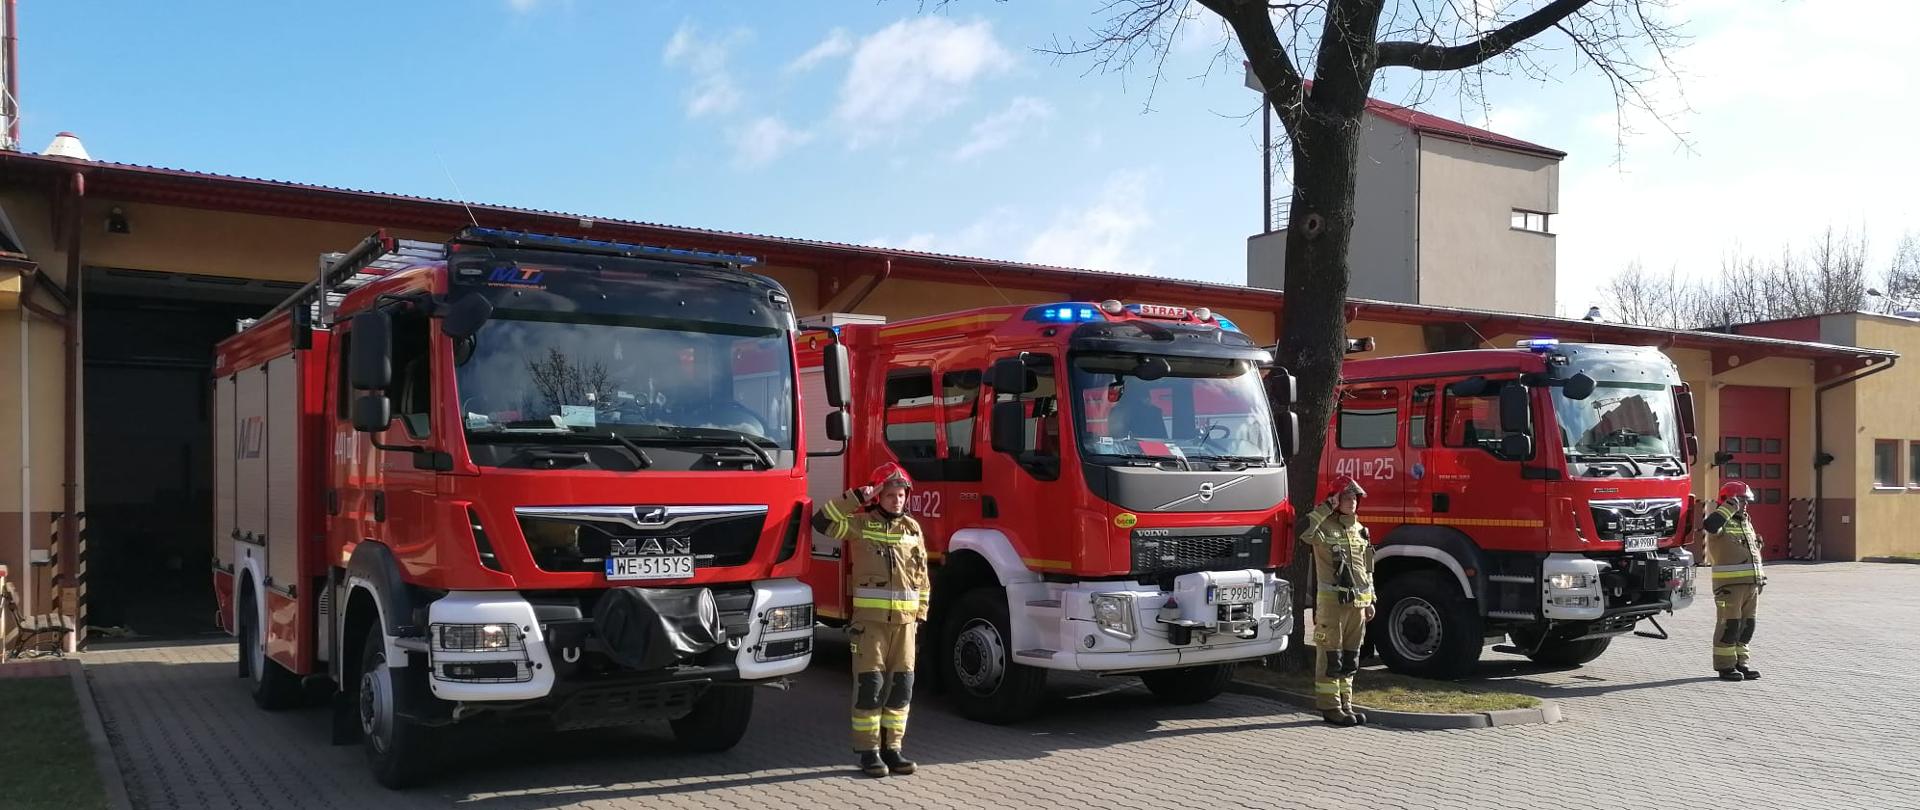 Strażacy oddają hołd dla ofiar katastrofy pod Smoleńskiemze mają włączone sygnalświetlne, przy nich stoją kierowcy, ktoy salutują. 